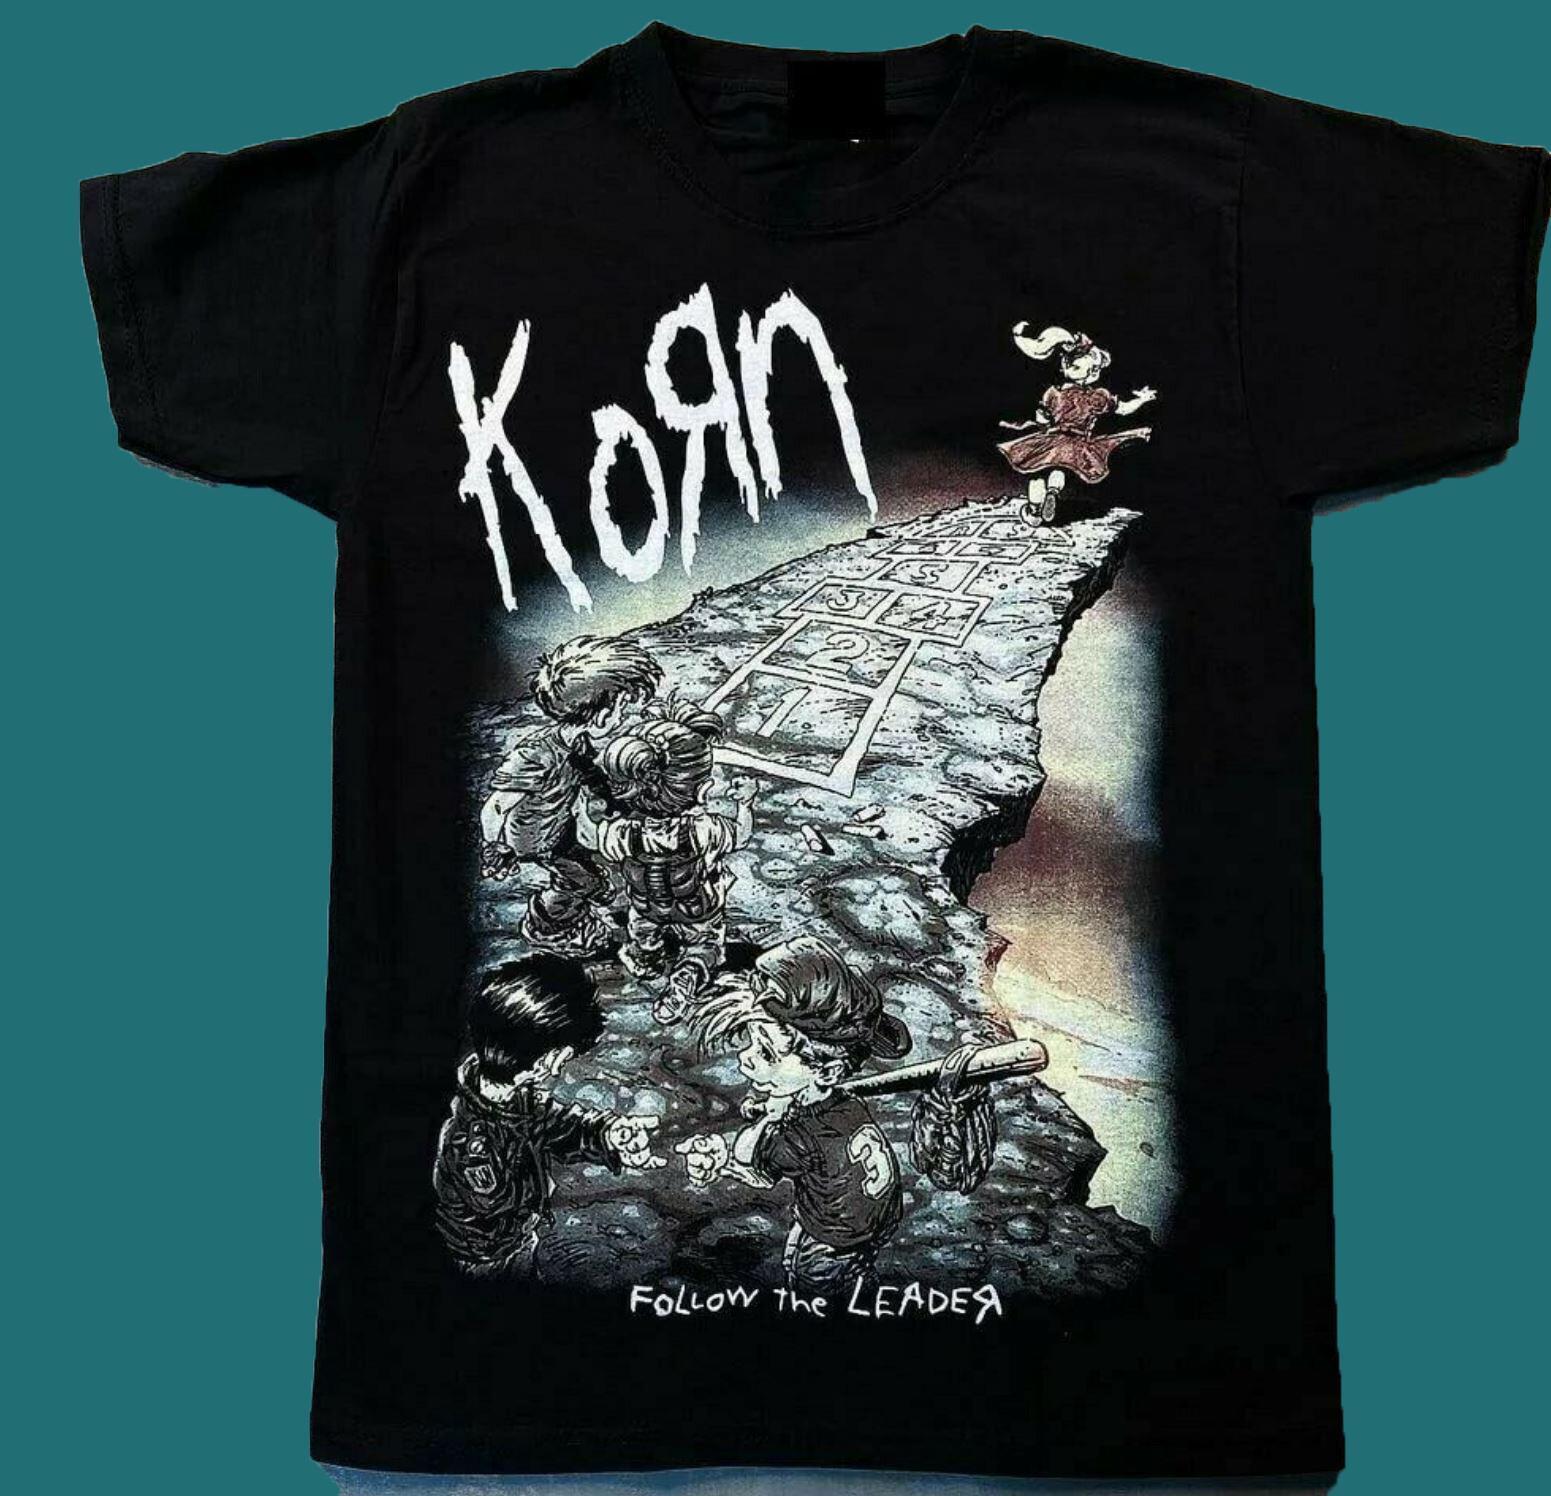 Hot Design Vintage Metal Band #KORN T-shirt 1990s short sleeve black S-5XL